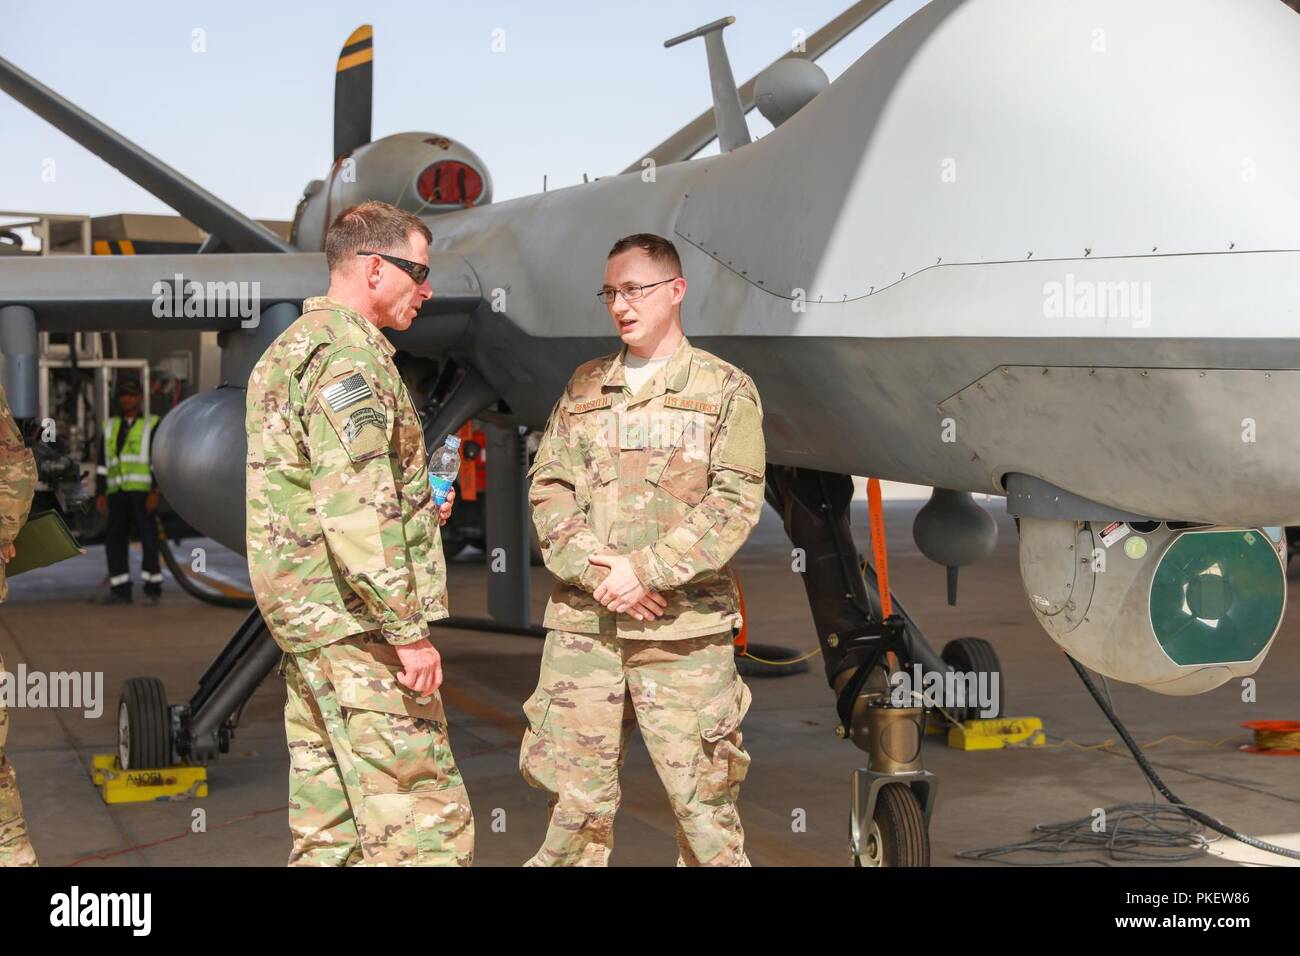 L'AÉRODROME DE KANDAHAR, Afghanistan (1 août 2018) -- U.S. Army Command Sgt. Le major William F. Thetford, le Commandement central américain enrôlé senior leader, parle d'un aviateur de la 451e escadre expéditionnaire aérienne, le 1 août 2018, lors de la visite de Thetford l'aérodrome de Kandahar, Afghanistan. Thetford engagé avec les dirigeants de former, conseiller et assister les Command-South, l'équipe de combat de la 2e Brigade d'infanterie, 4e Division d'infanterie, 451e Escadre expéditionnaire de la Force de sécurité, 1re Brigade d'aide, Groupe de travail Panther, l'OTAN L'Unité médicale multinationale de rôle III et d'autres unités. Banque D'Images